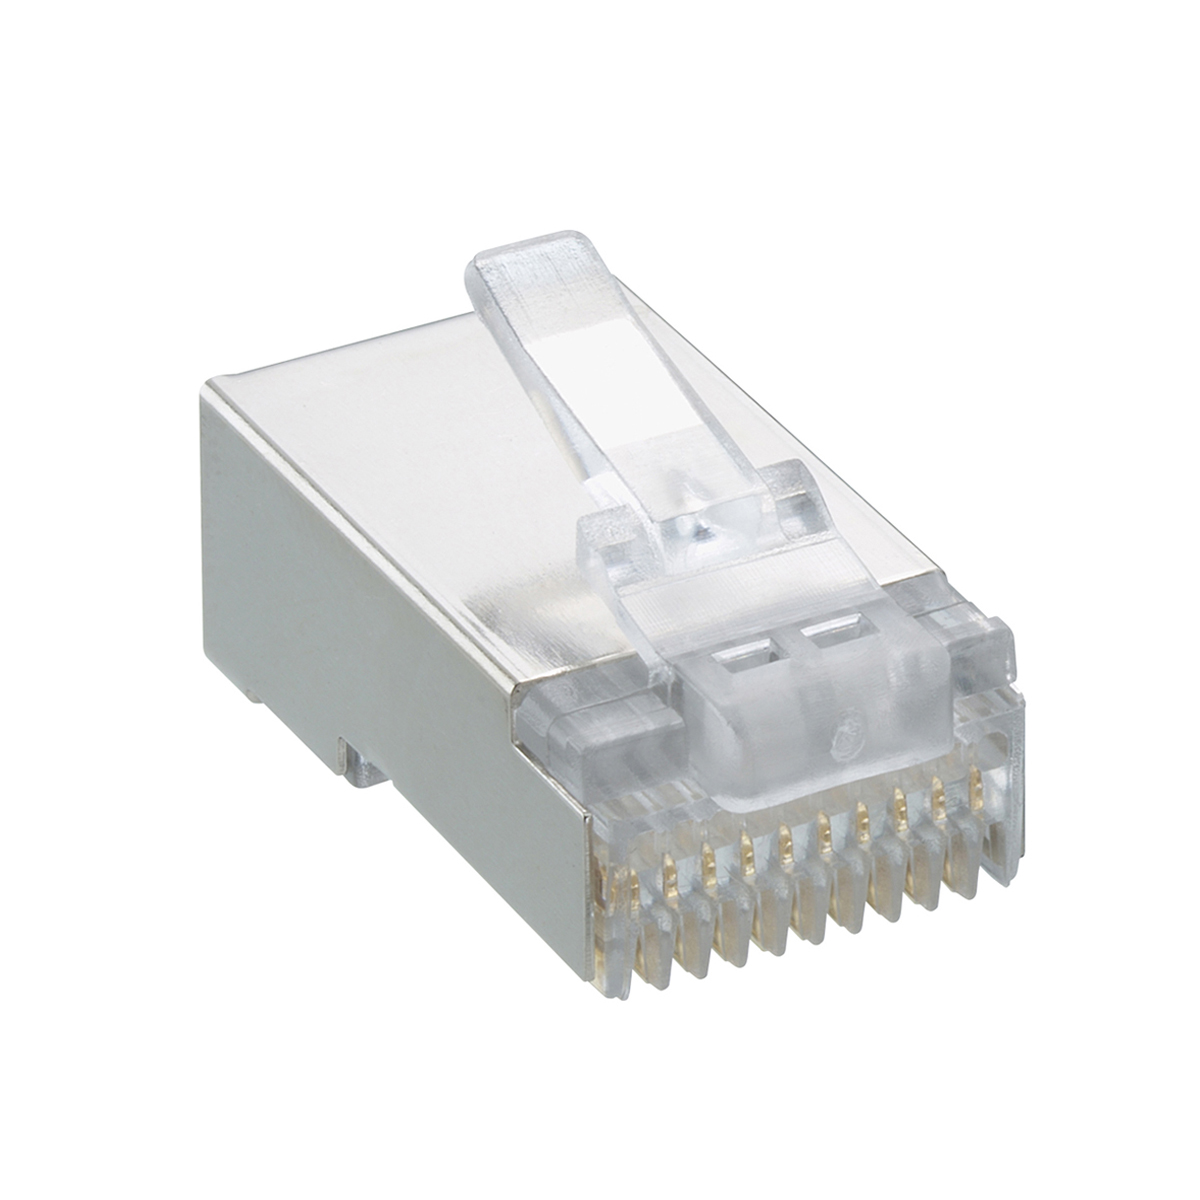 Lumberg: P 303 S (Series 25 | Modular connectors)